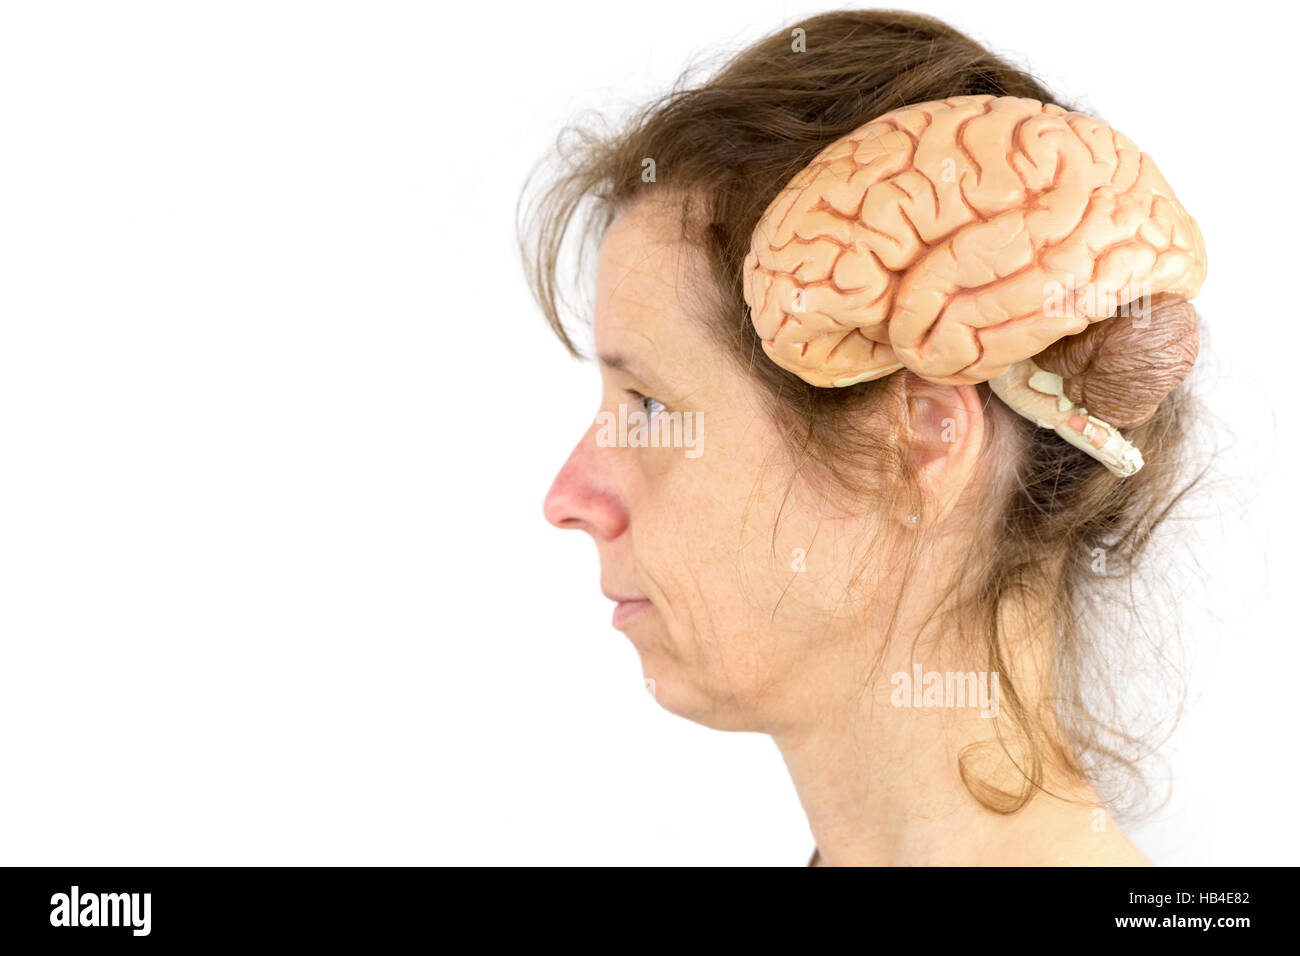 Kopf der Frau mit Modell des menschlichen Gehirns Stockfoto